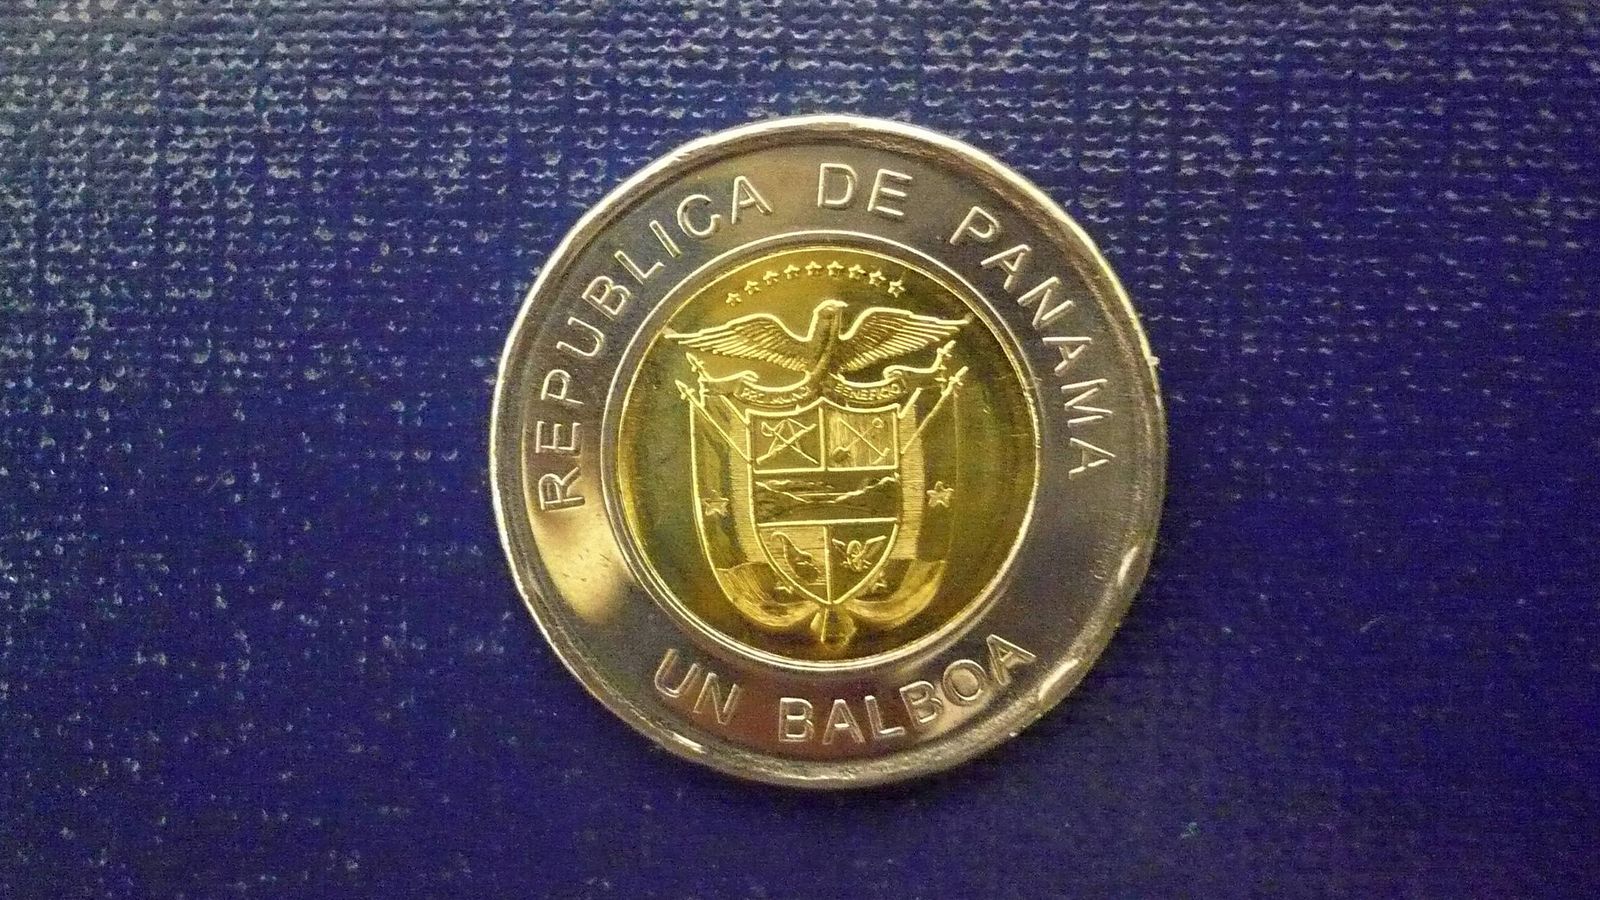 Foto: Una balboa, la moneda oficial de Panamá (EFE)